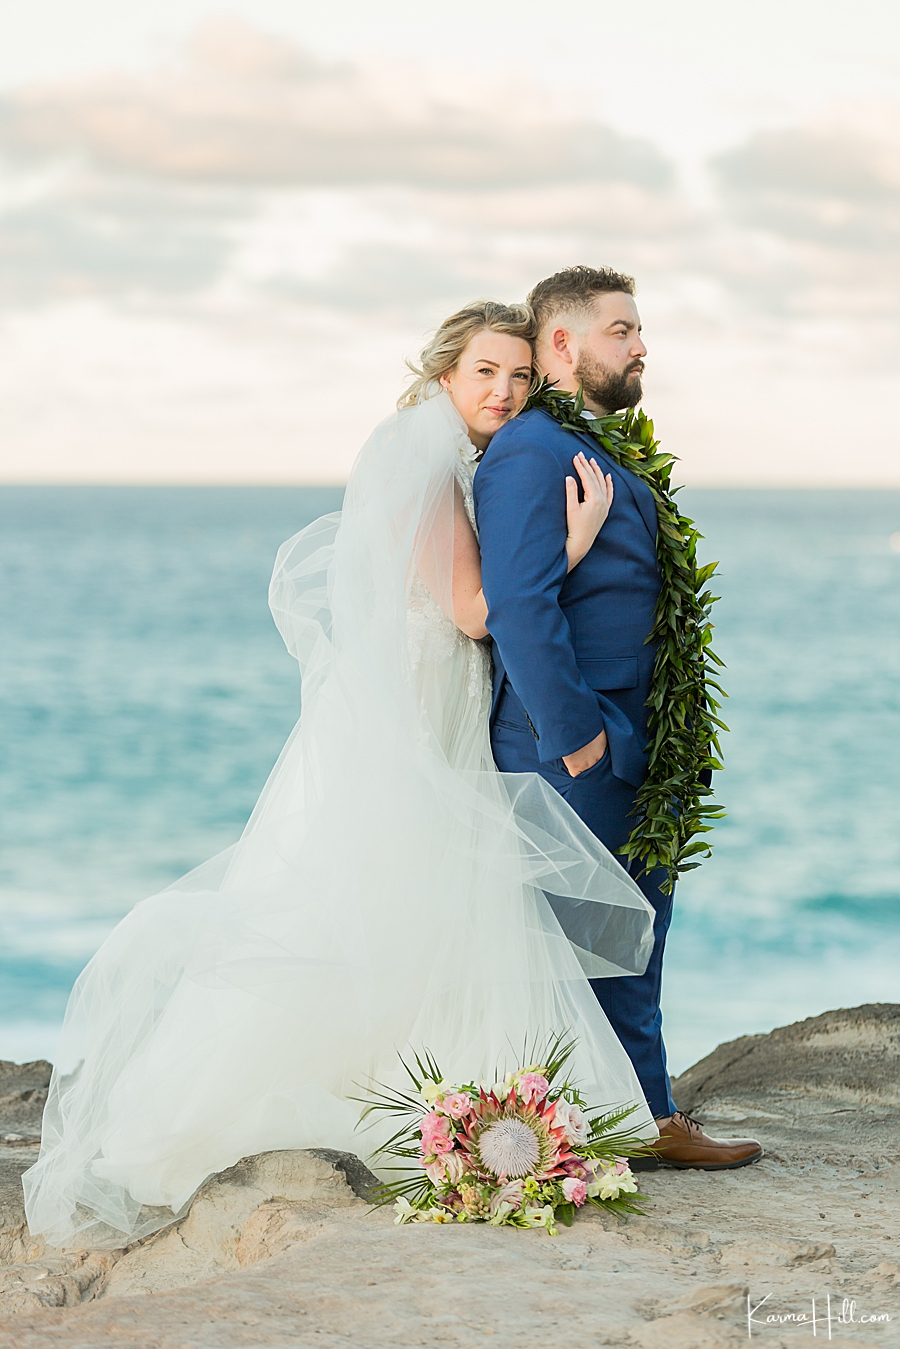 Hawaii beach wedding locations
